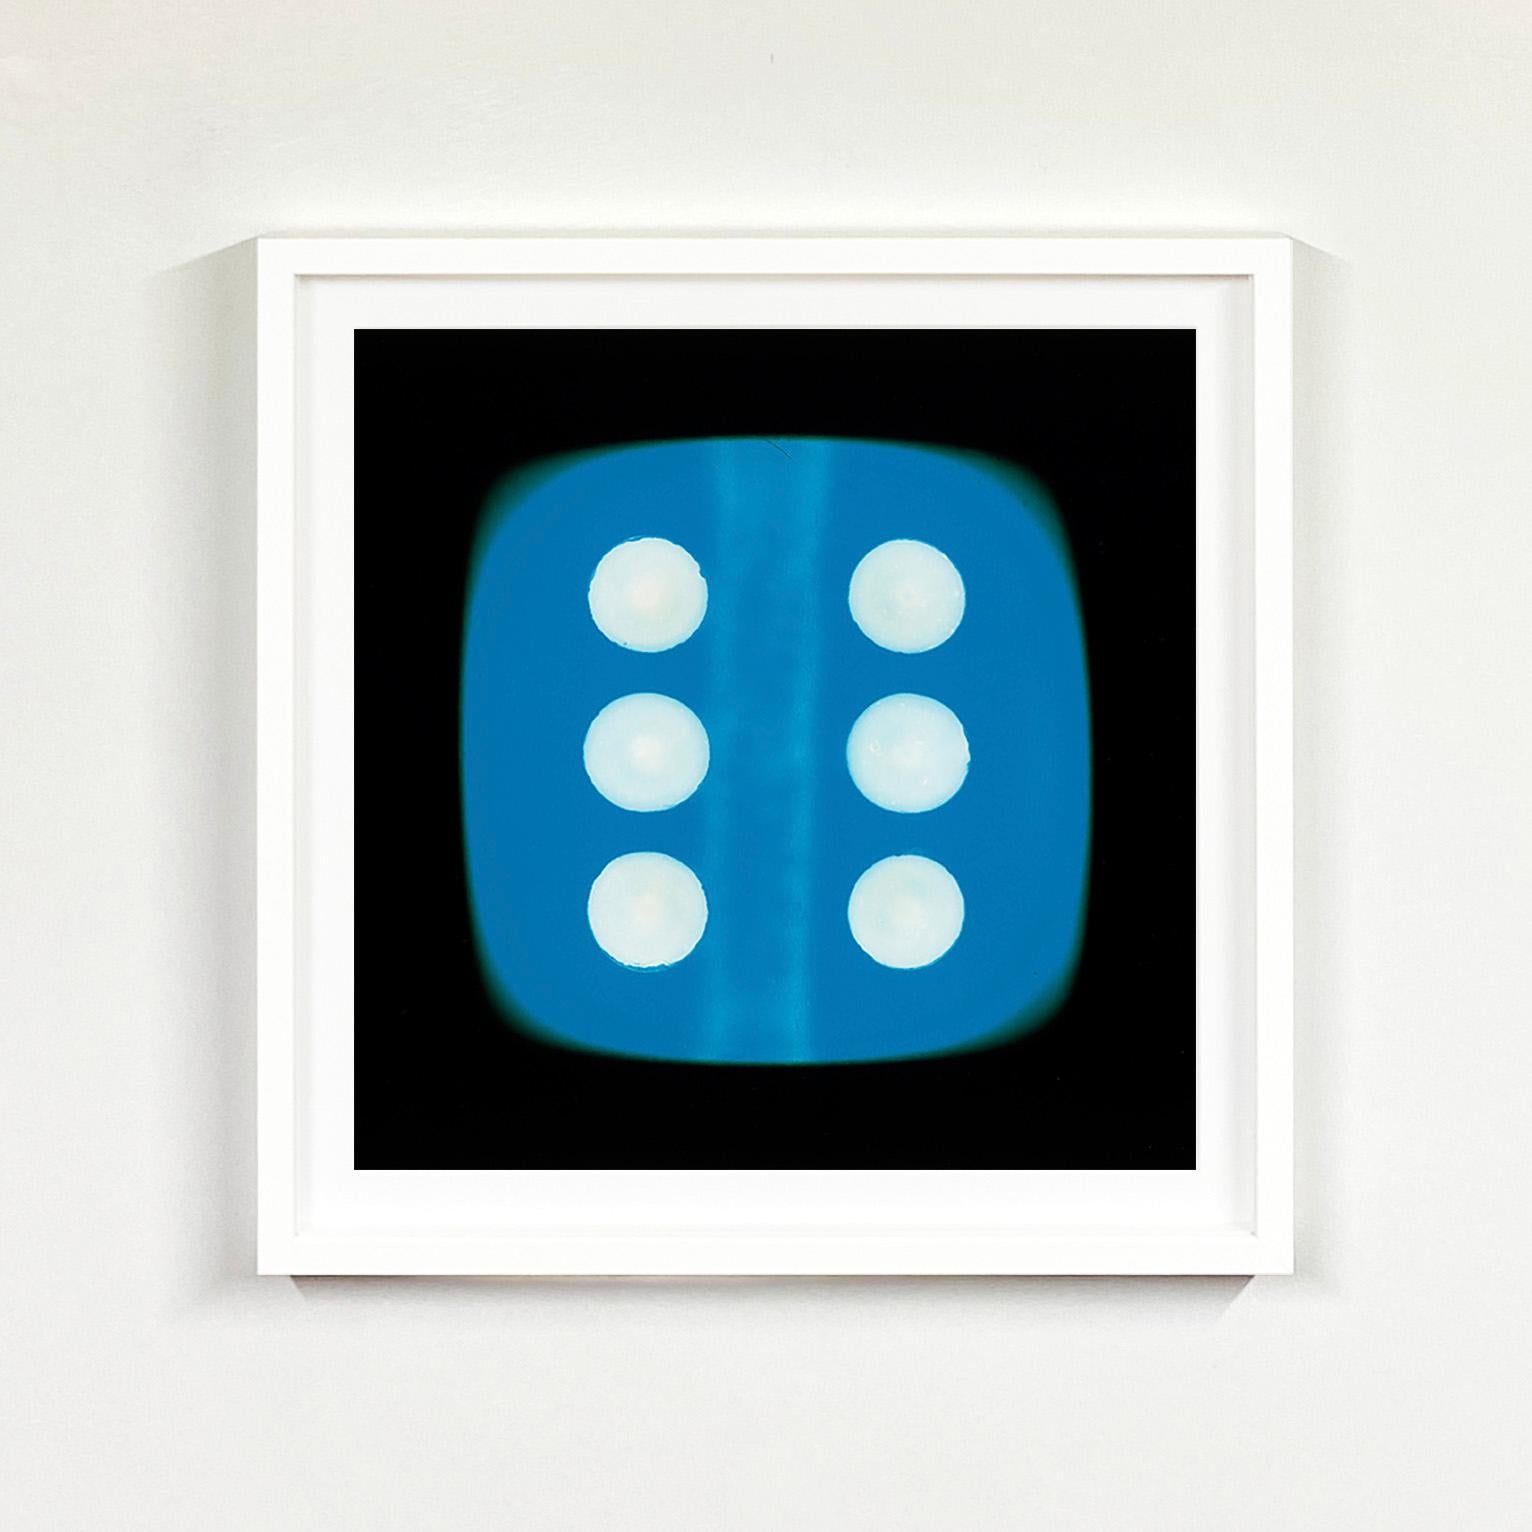 Dice-Serie, Blaue Sechs – Pop-Art-Farbfotografie – Photograph von Heidler & Heeps